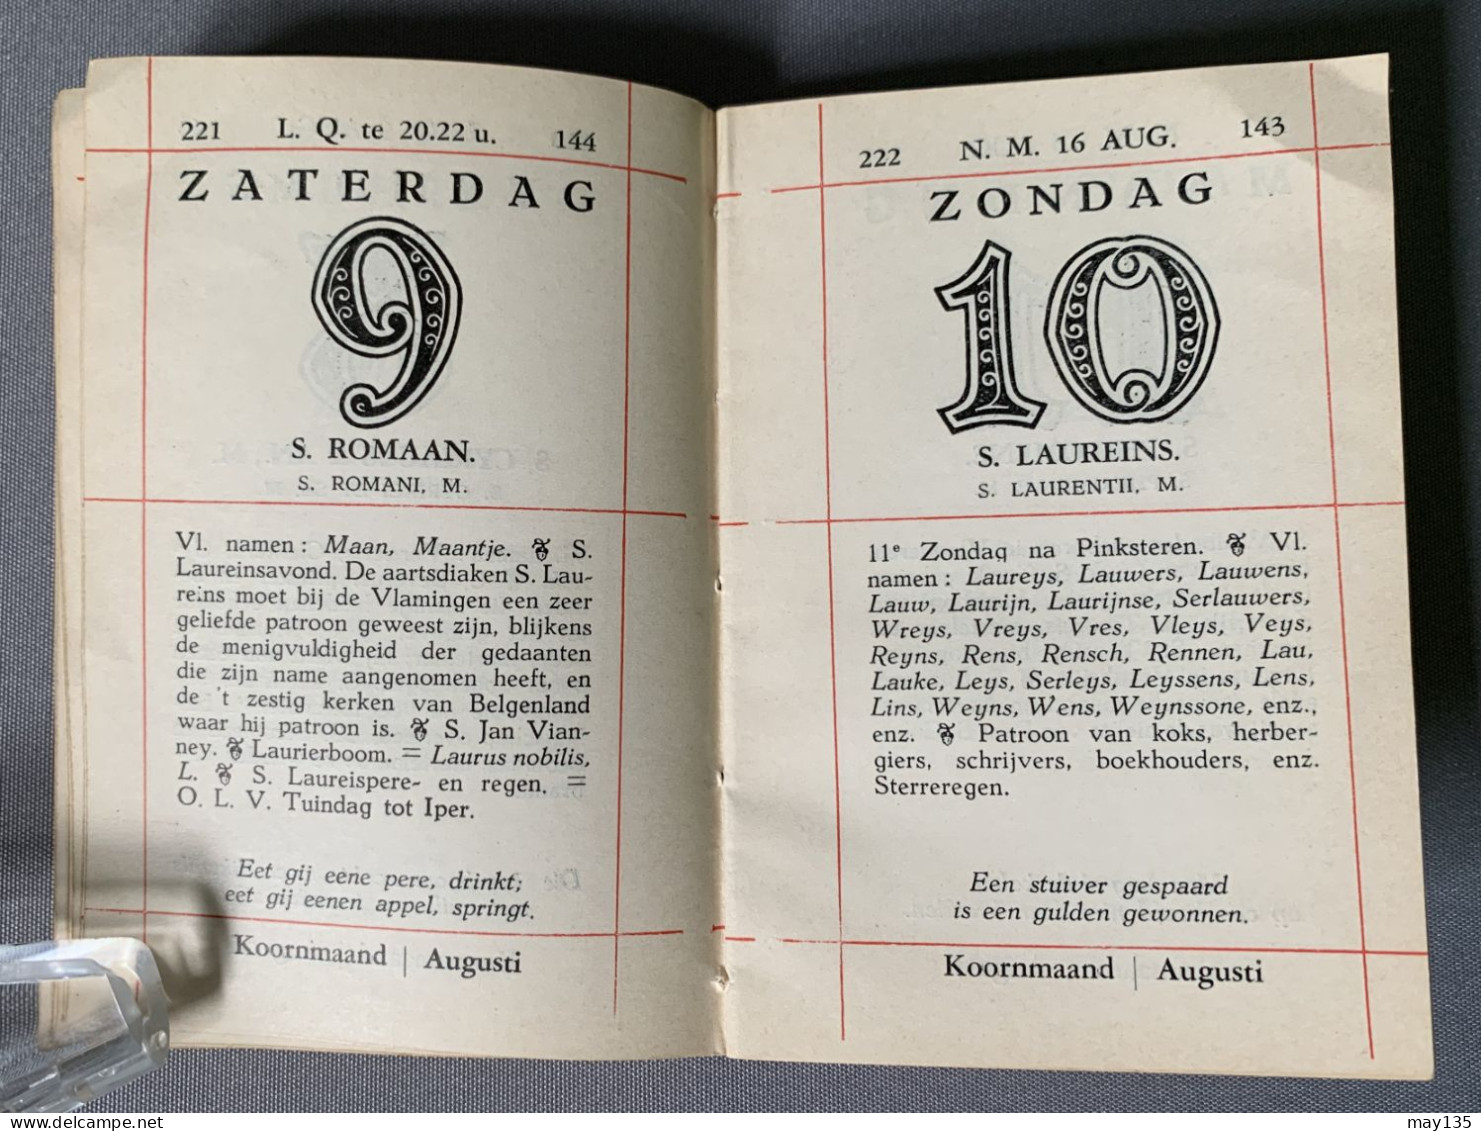 1947 - Plukalmanak - Van Zaliger Eerw. Heer Ende Meester Guido Gezelle - Oud